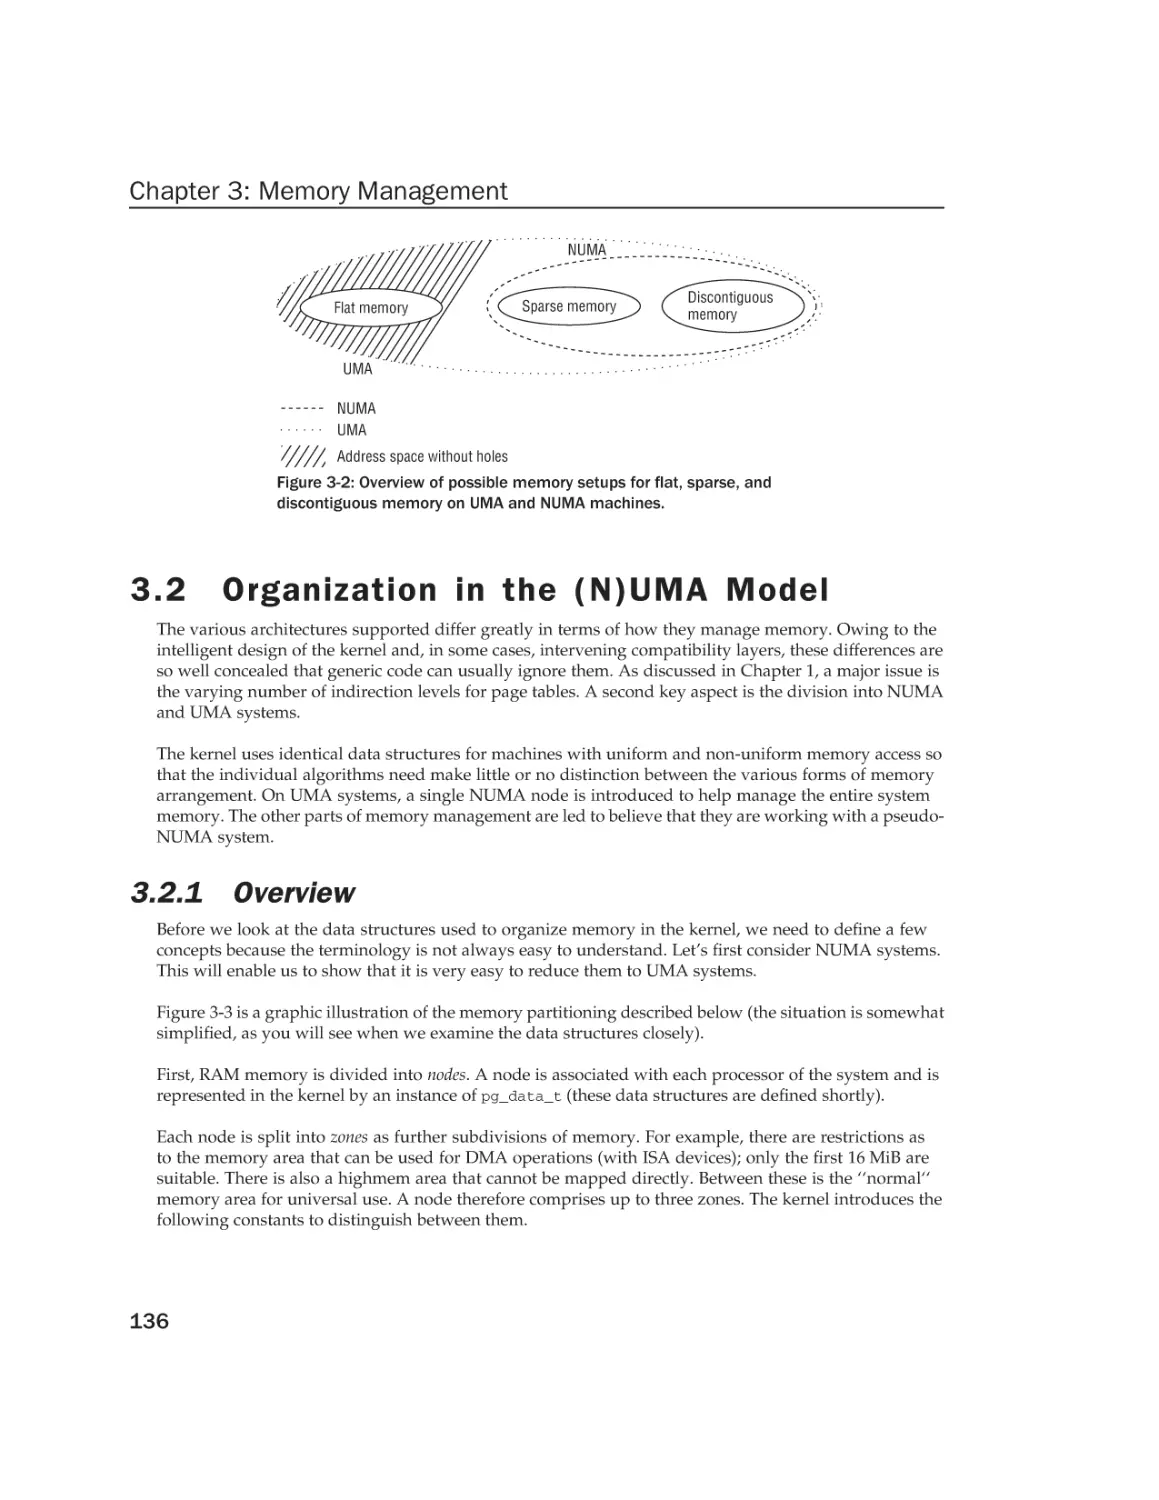 3.2 Organization in the (N)UMA Model